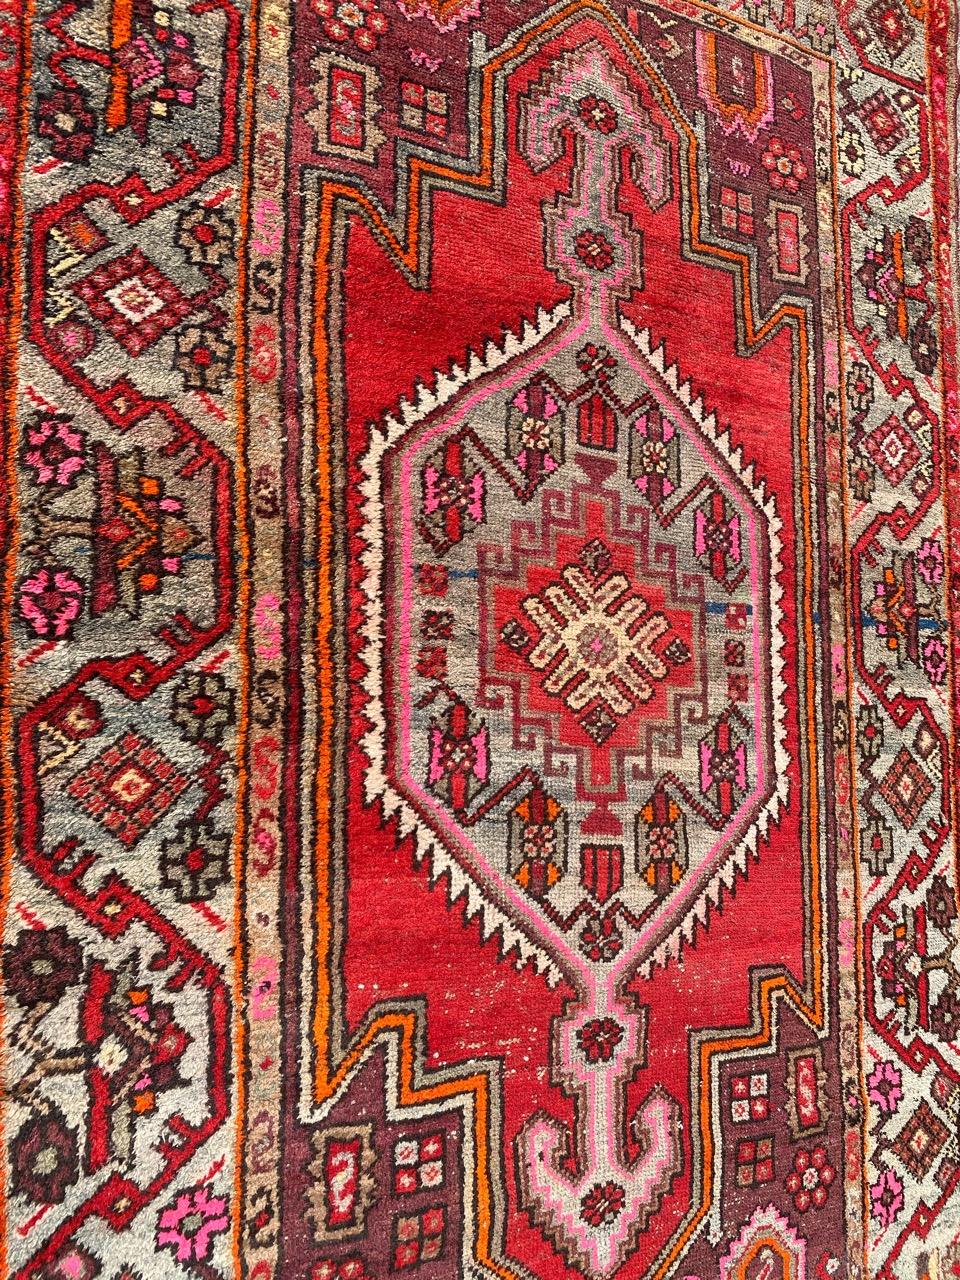 Schöner Hamadan-Teppich mit schönem geometrischem Stammesmuster und schönen Farben, komplett handgeknüpft mit Wollsamt auf Baumwollgrund.

✨✨✨
